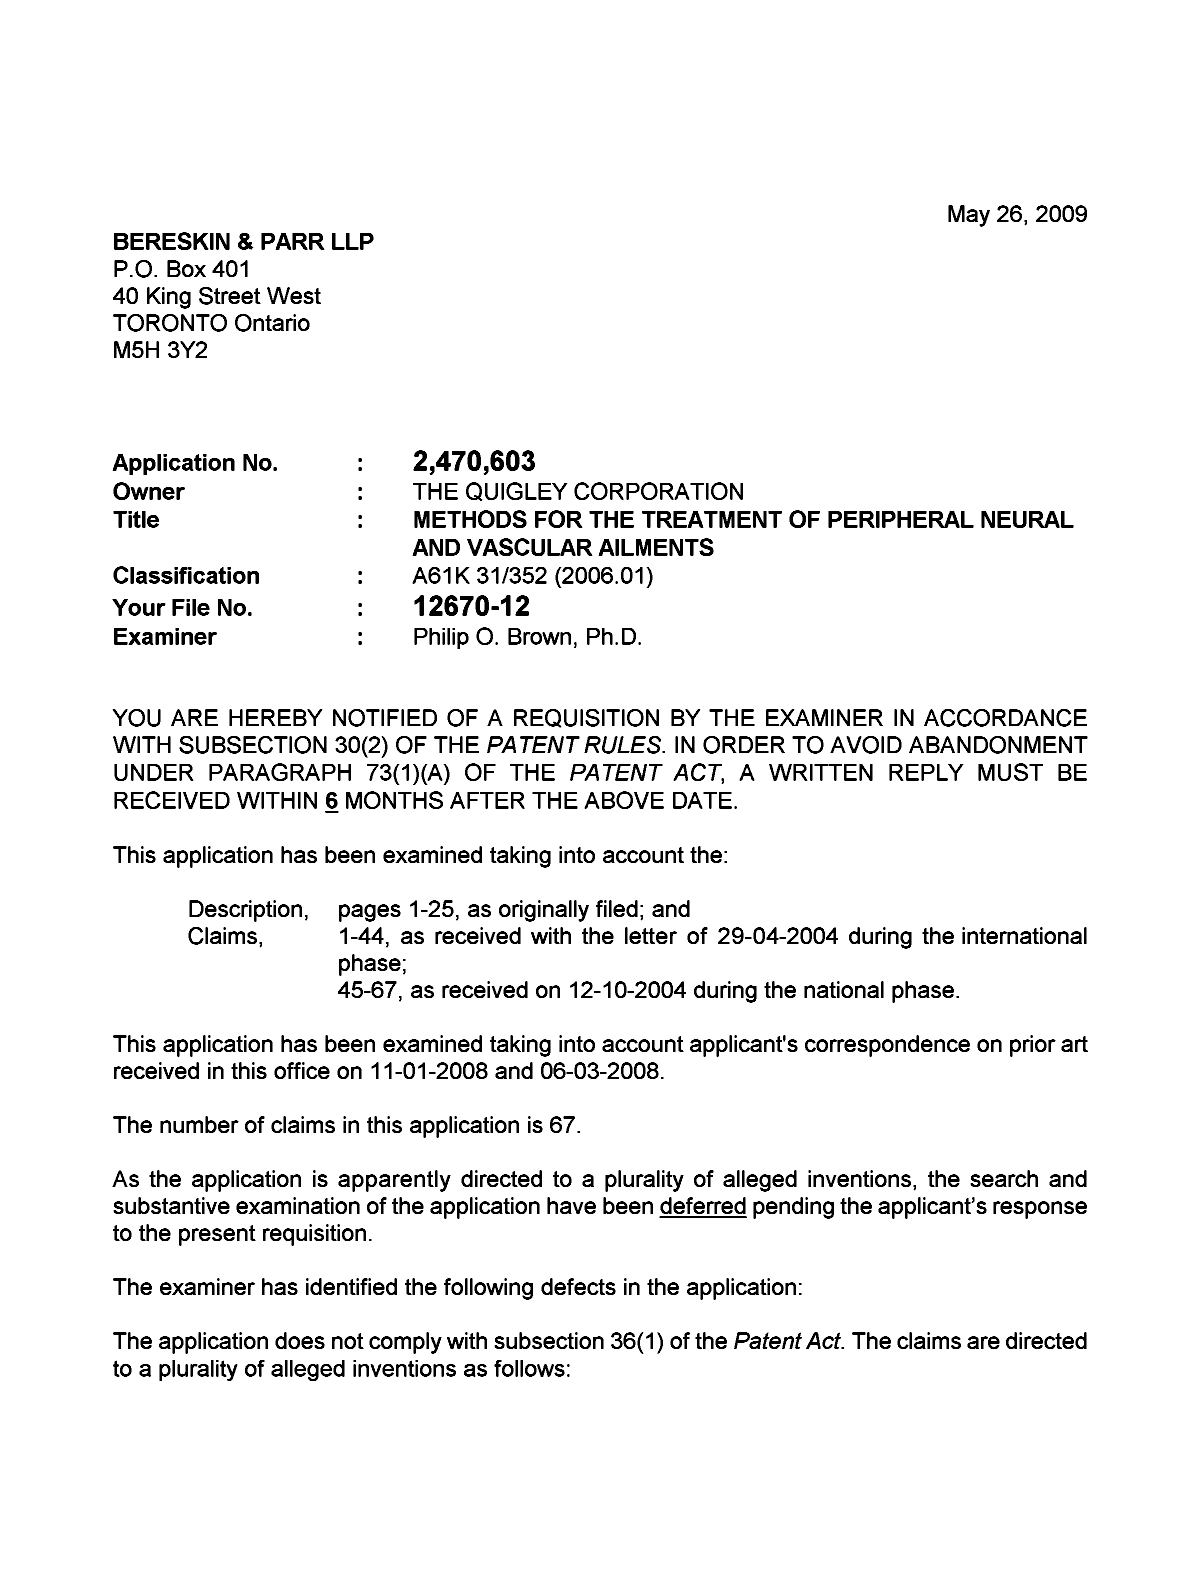 Document de brevet canadien 2470603. Poursuite-Amendment 20090526. Image 1 de 3